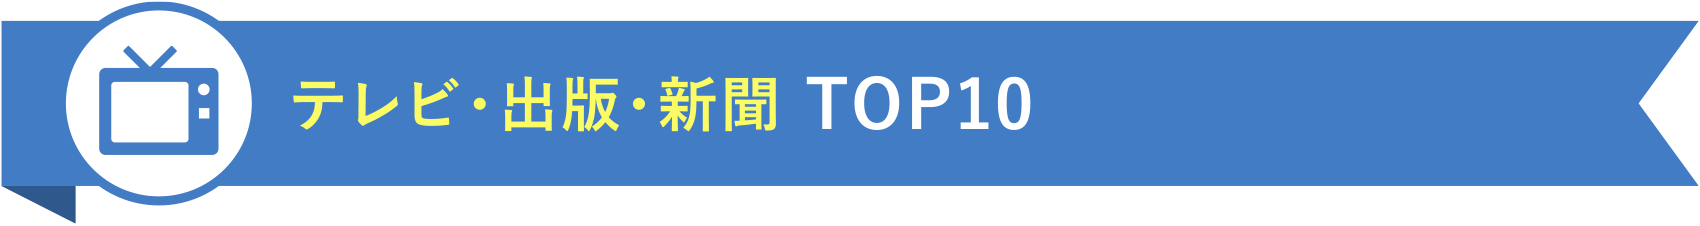 テレビ・出版・新聞 TOP10